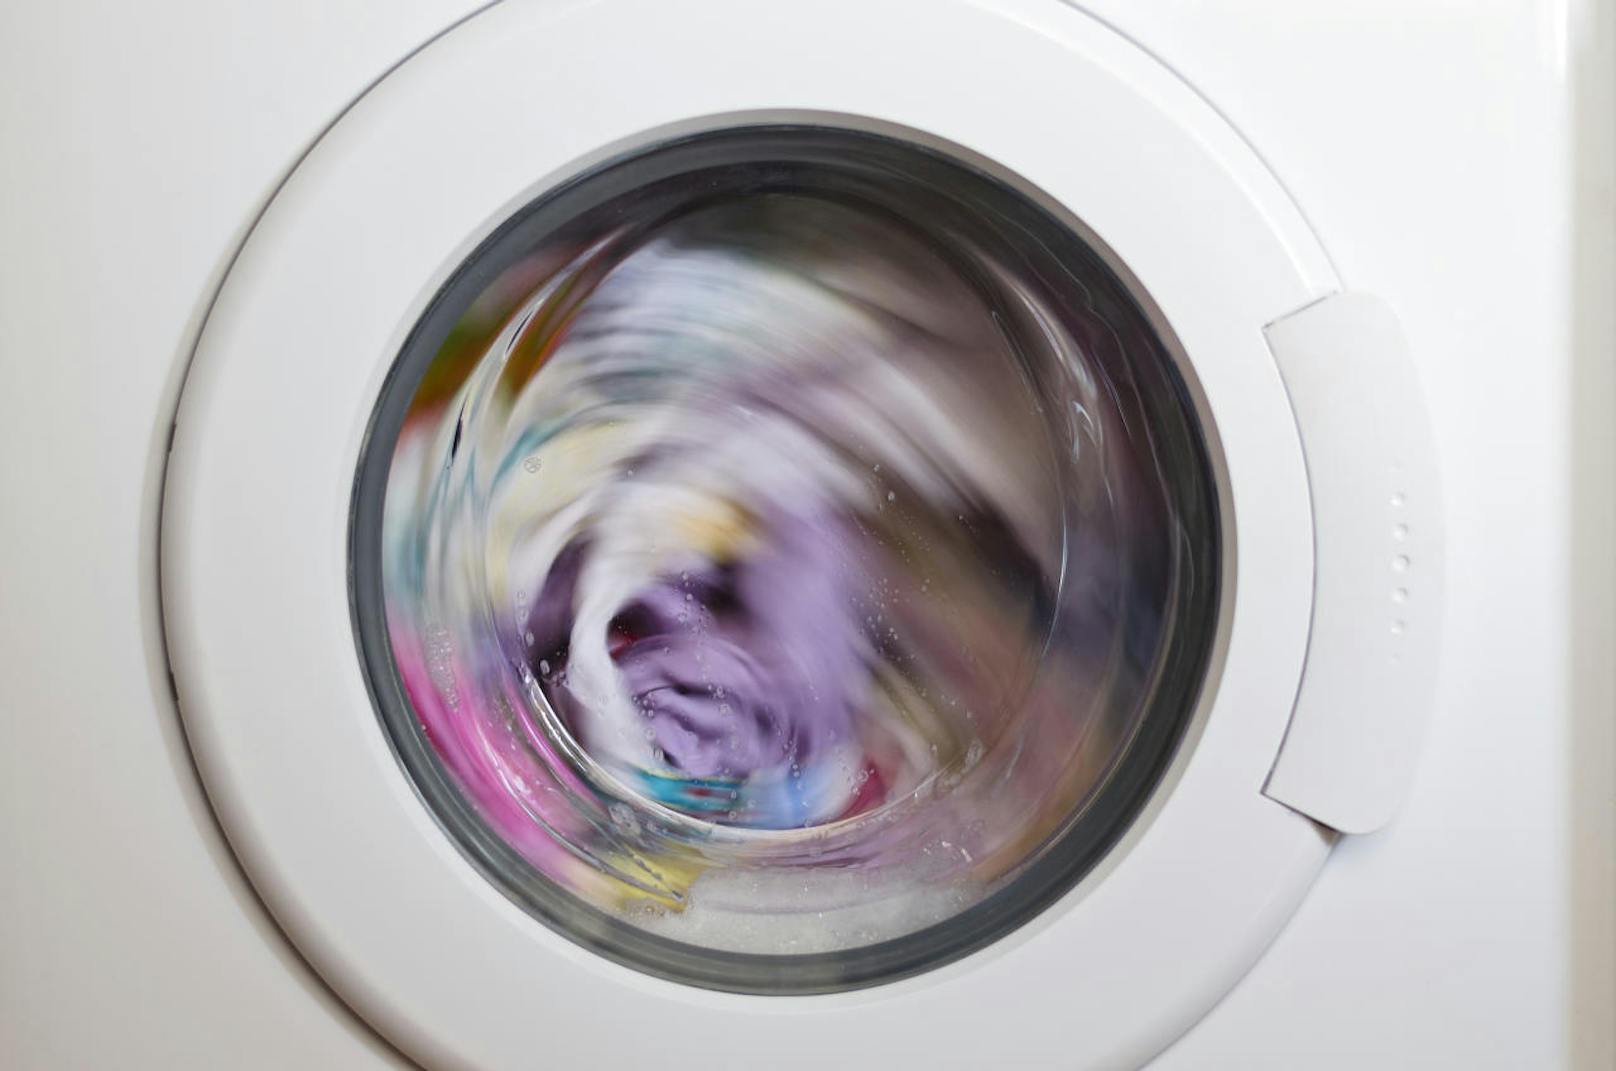 Hersteller Electrolux sagt: "Ja, die letzte Waschmaschinen-Minute kann länger dauern. Die Zeiten sind eher Richtlinien und können abweichen."